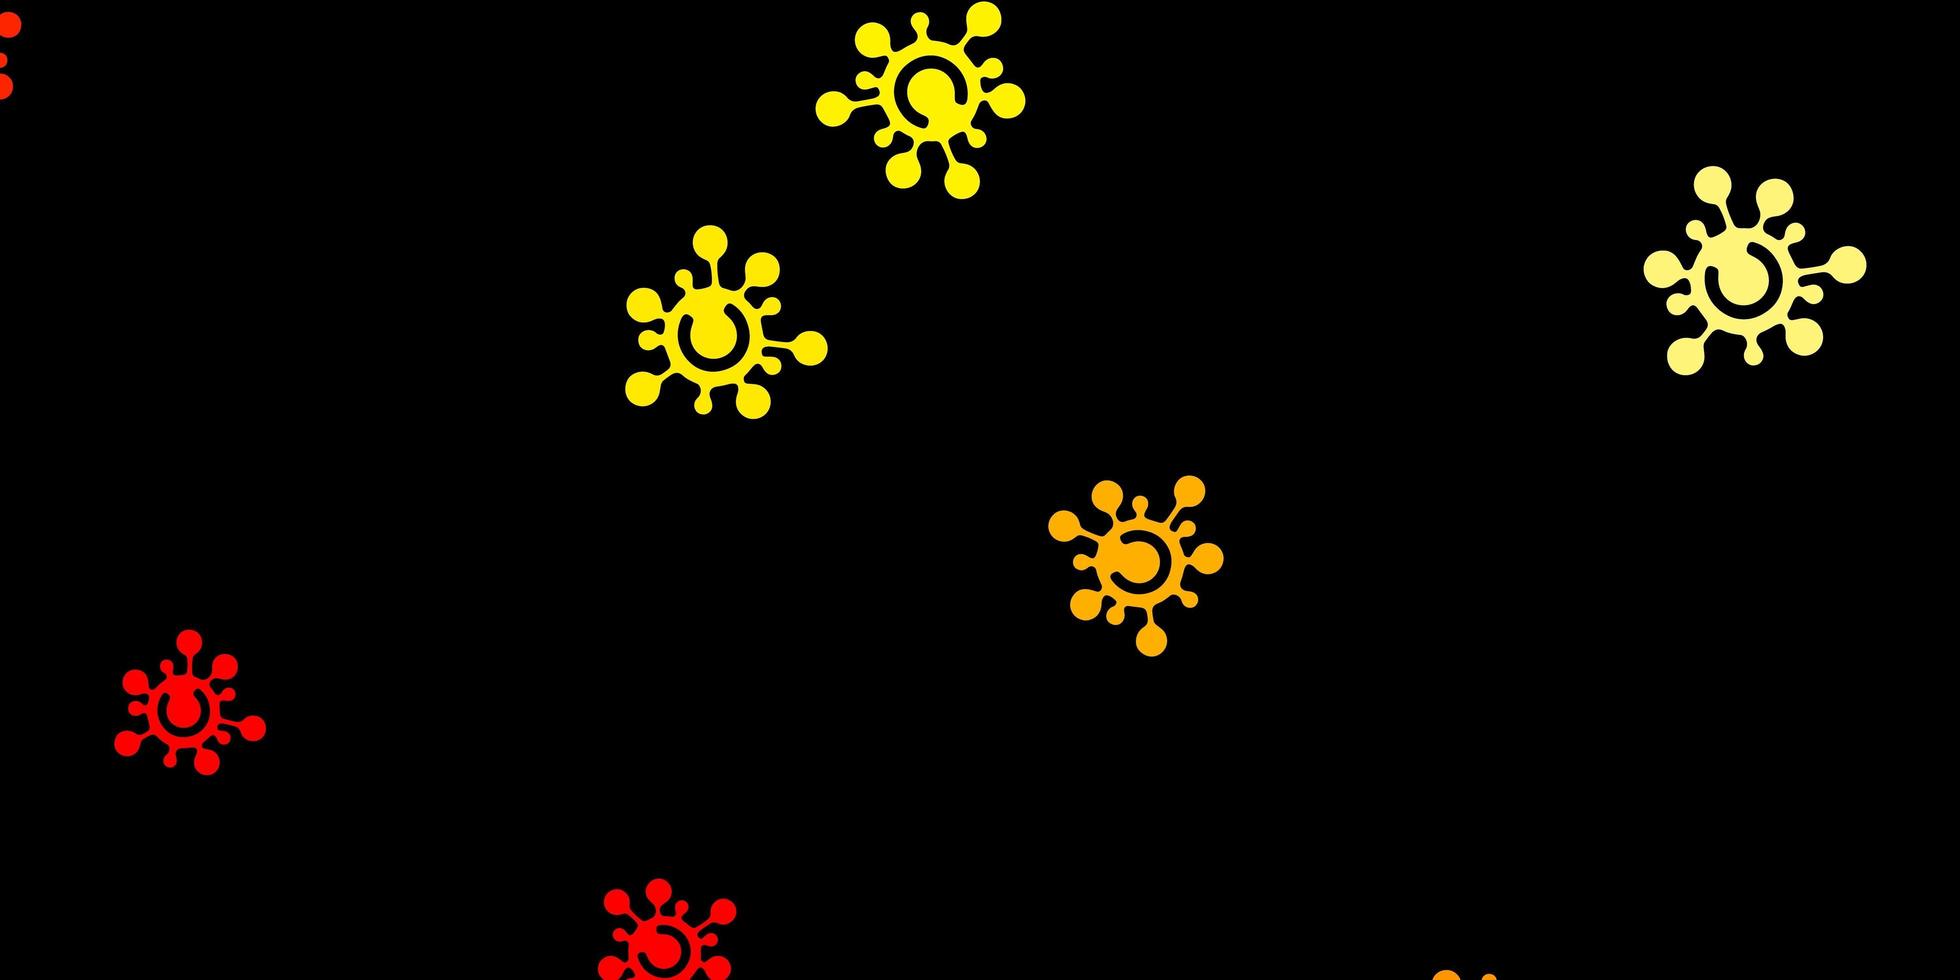 sfondo arancione scuro con simboli di virus. vettore